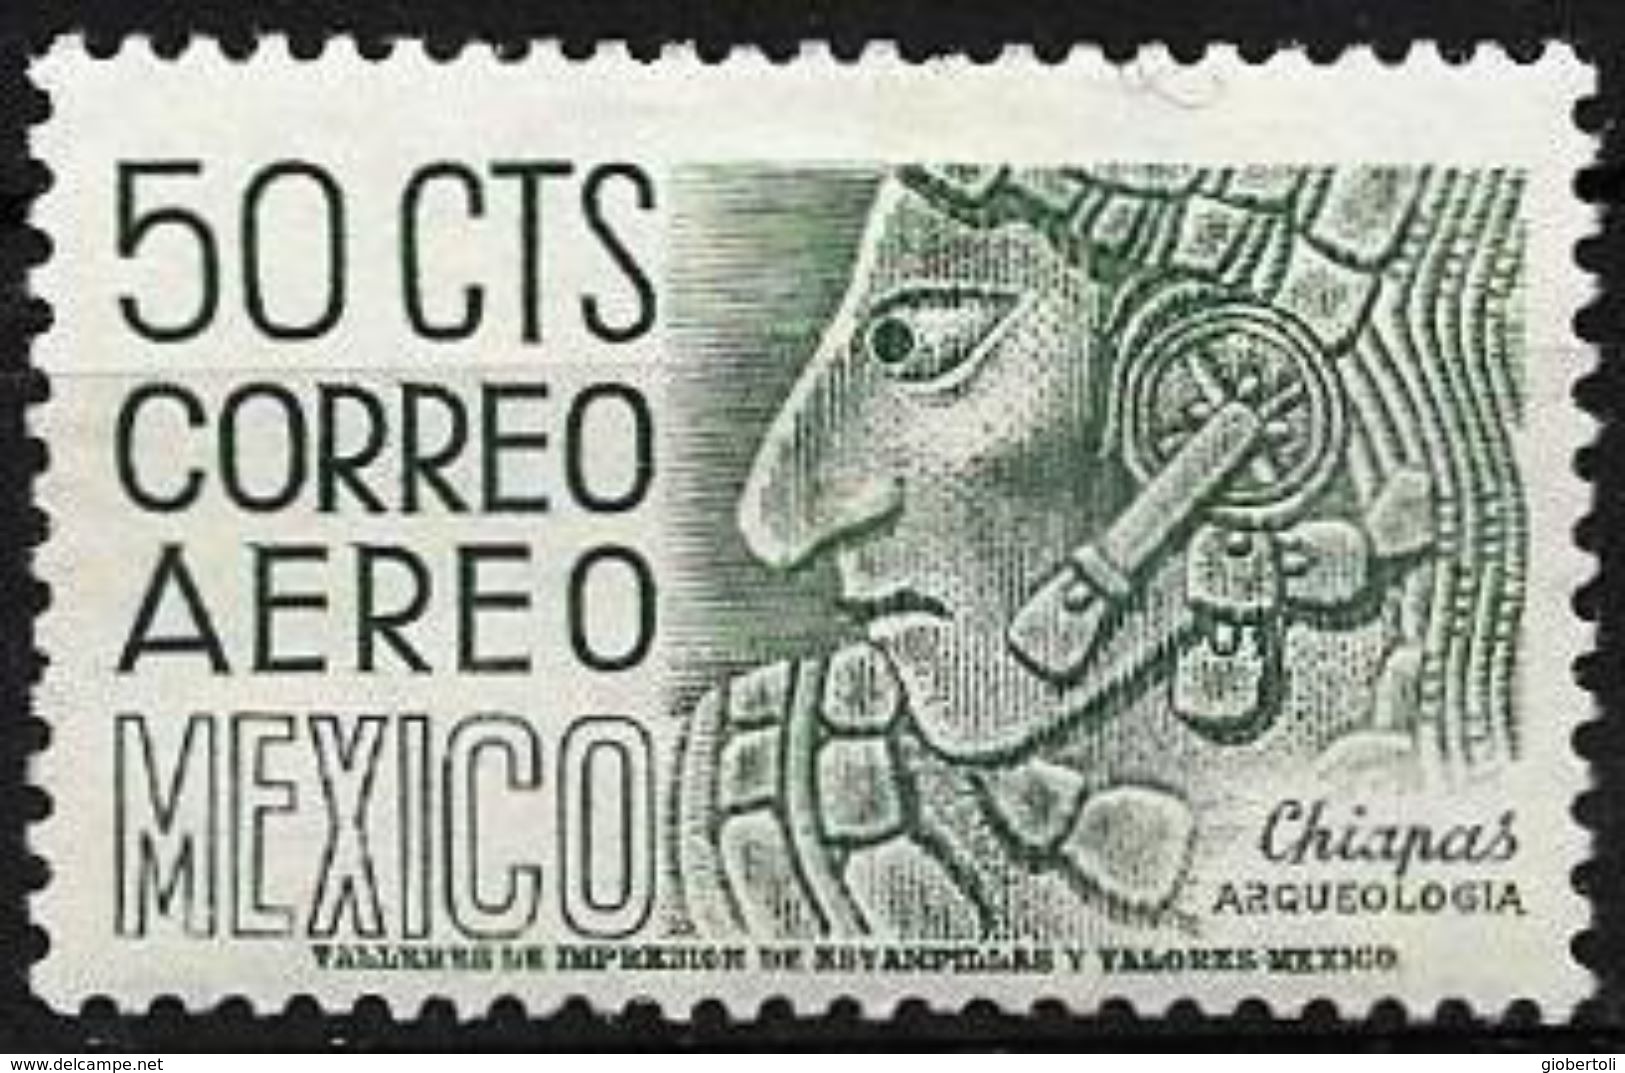 Messico/Mexico/Mexique: Archeologia Messicana, Mexican Archeology, Archéologie Mexicaine - Archeologia